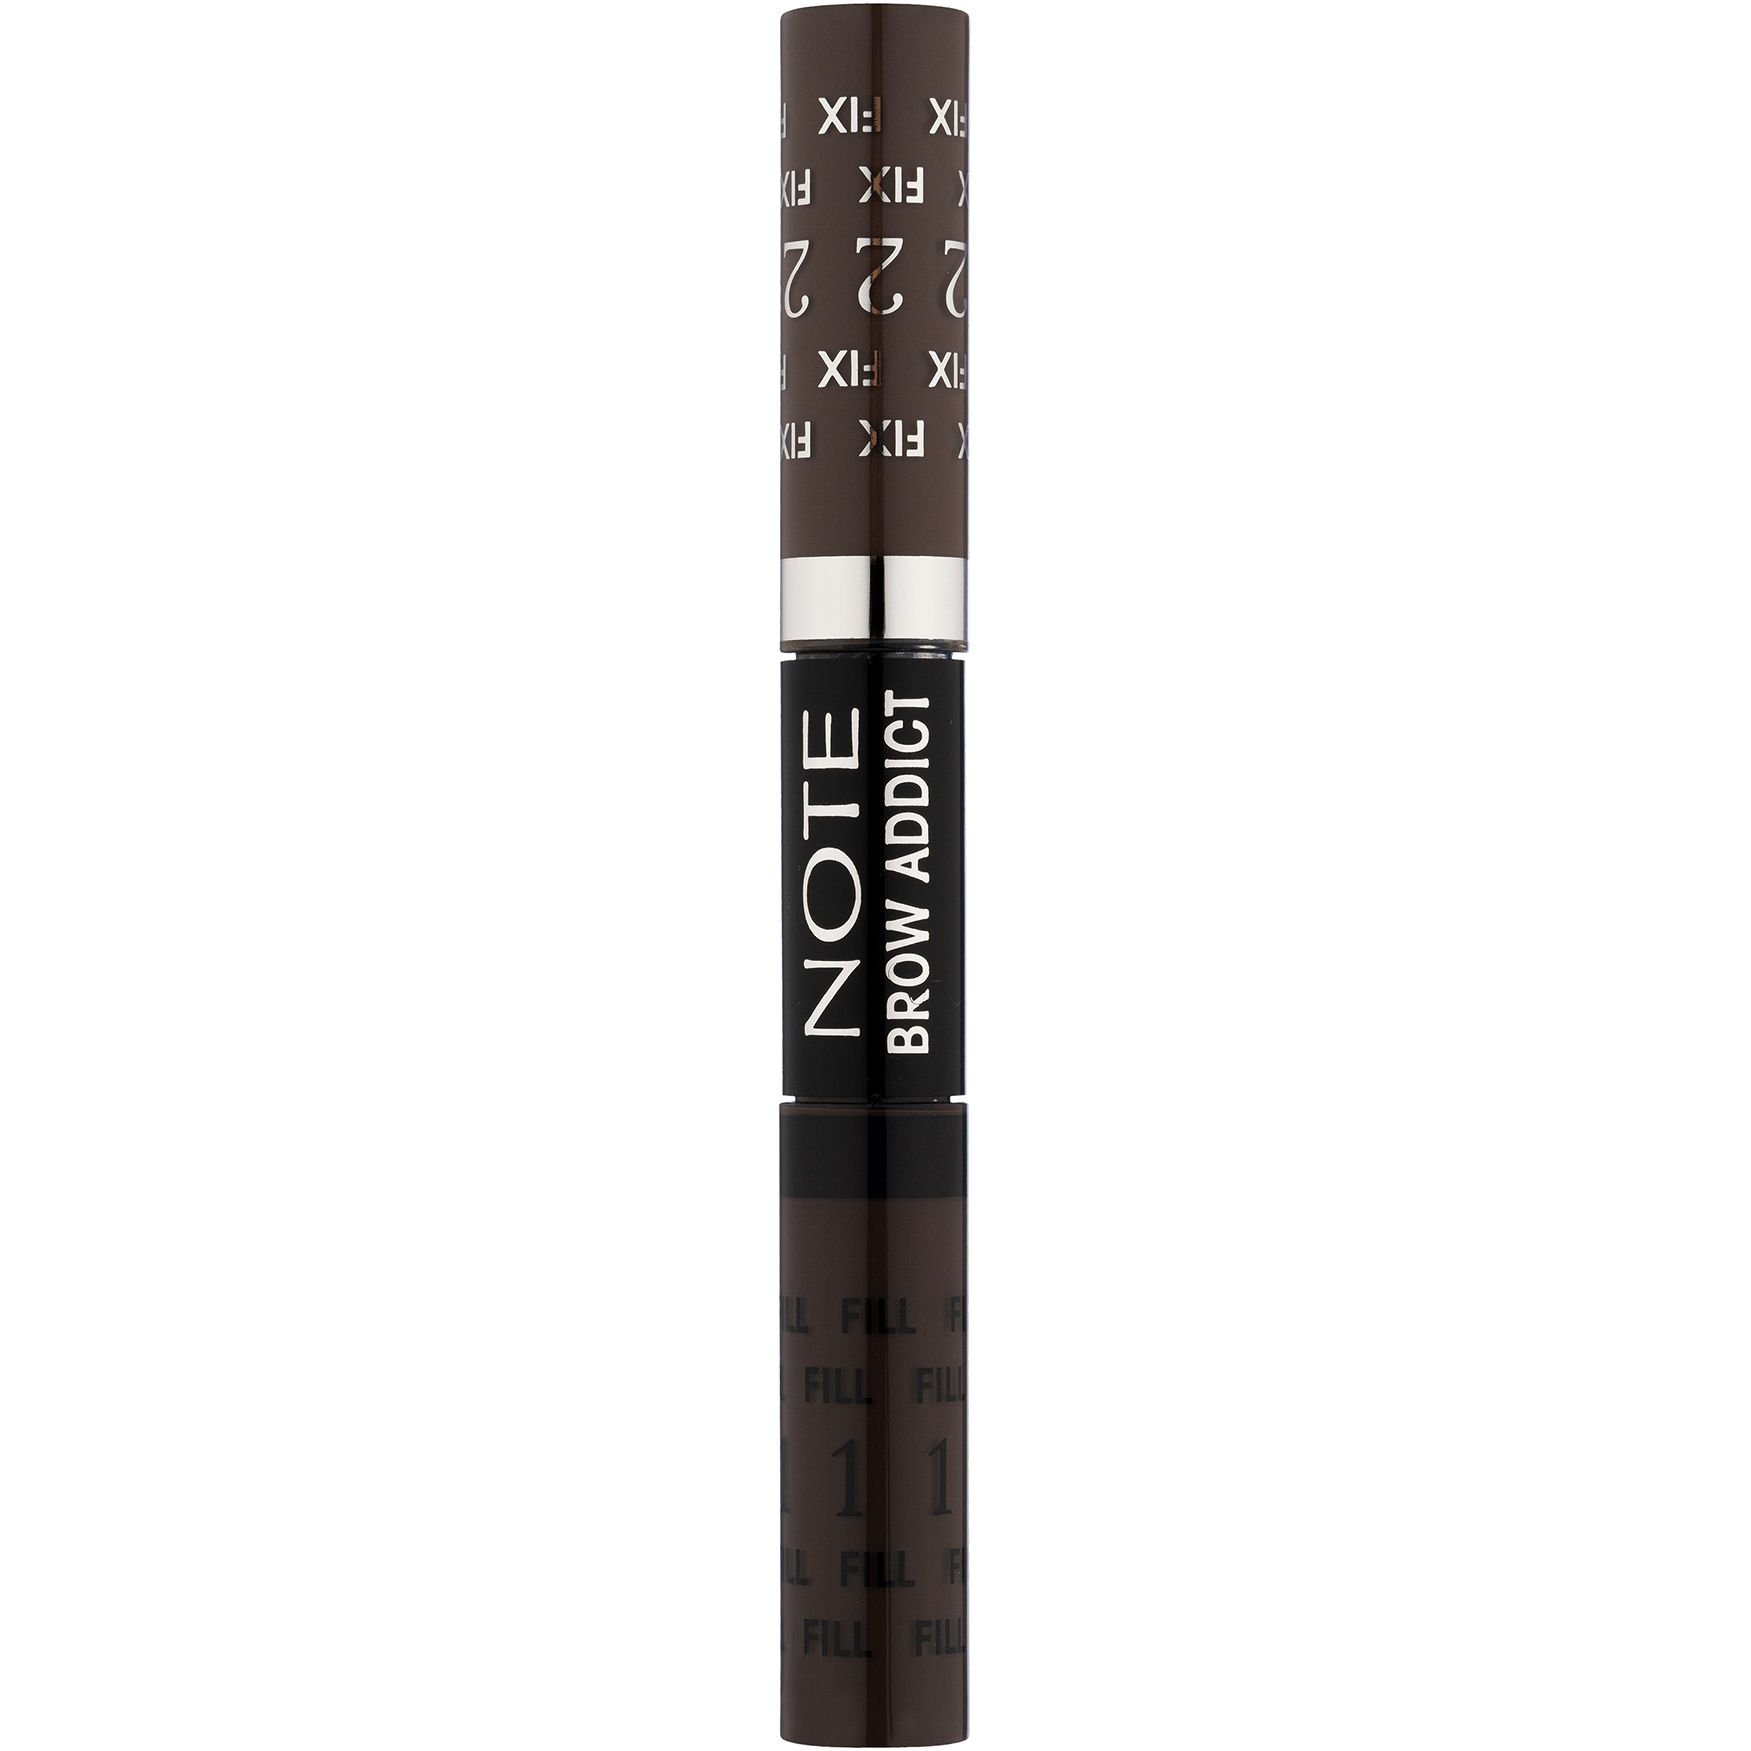 Тинт и гель для бровей 2 в 1 Note Cosmetique Brow Addict Tint & Shaping Gel Grey Brown тон 4, 10 мл - фото 1